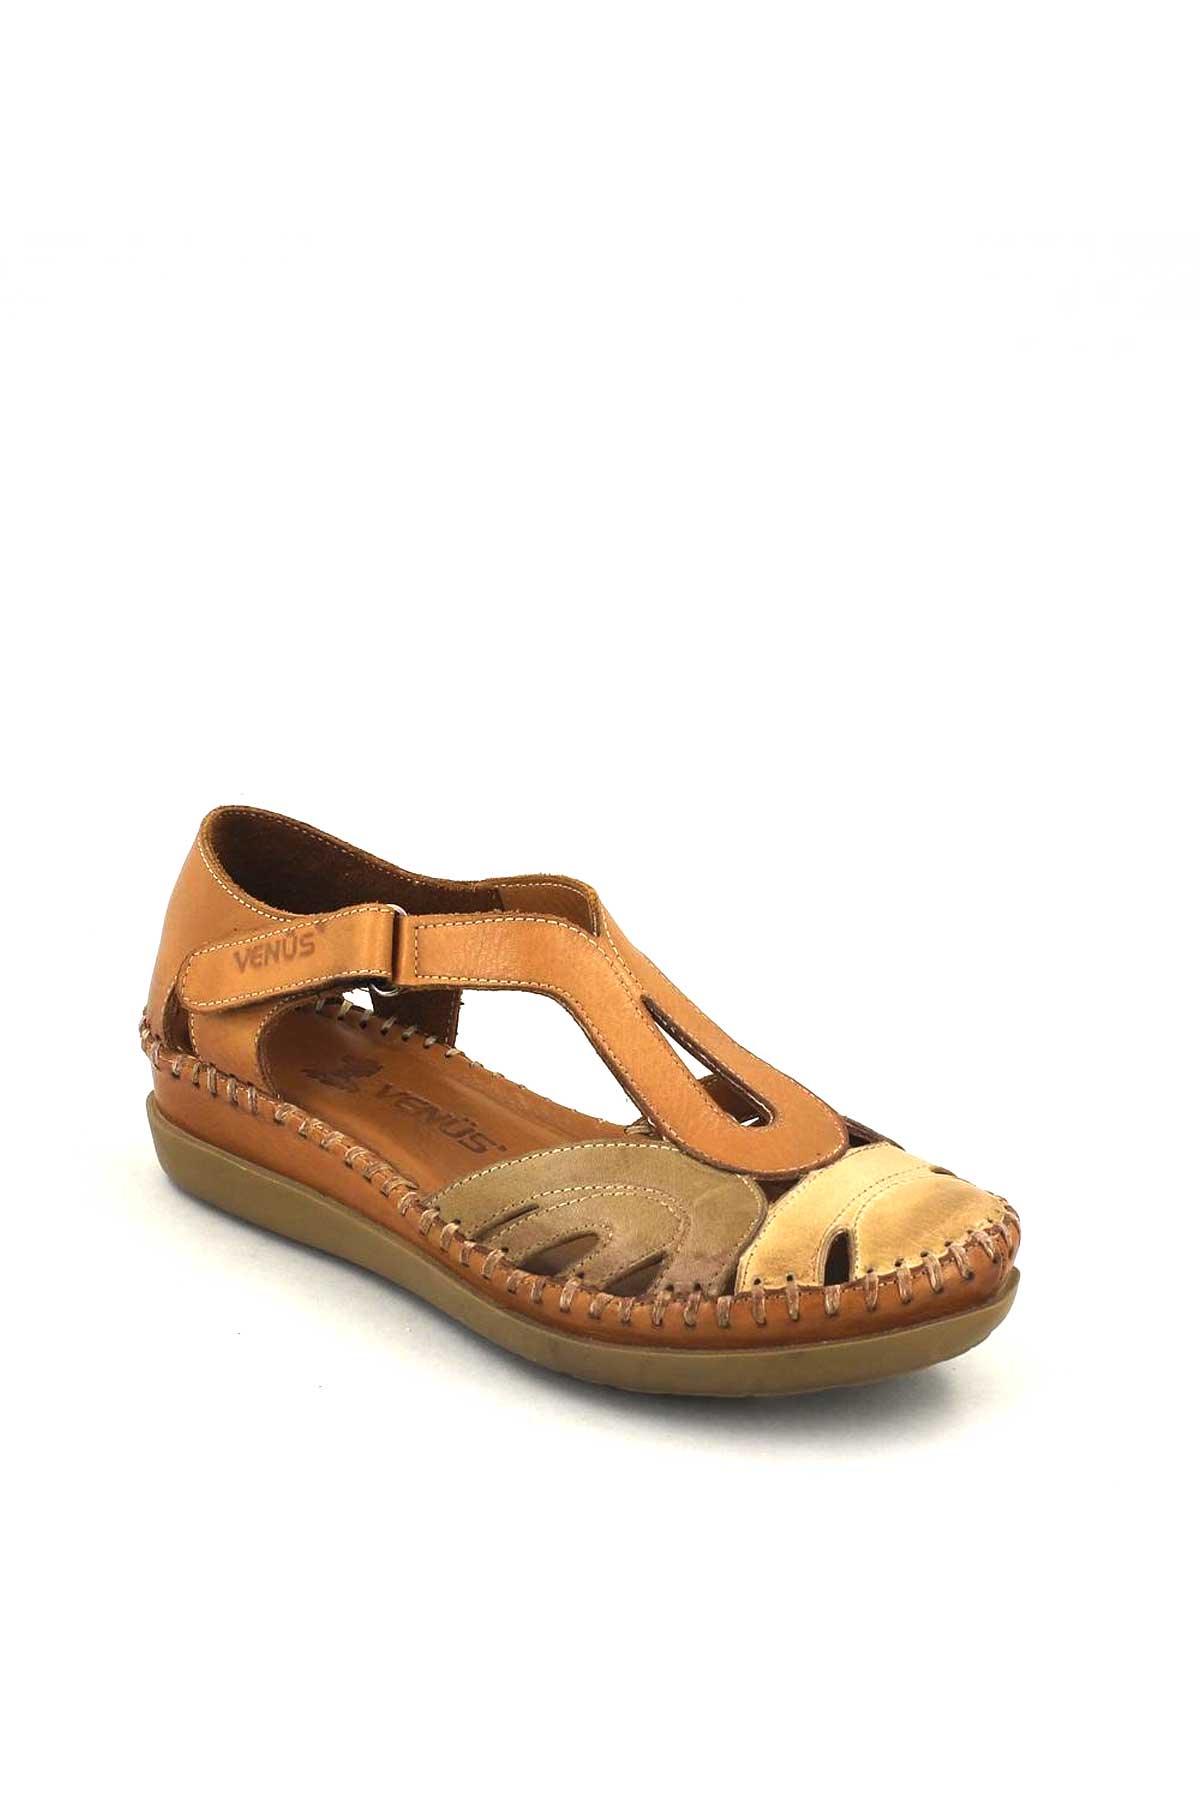 Kadın Comfort Sandalet Taba Bej 18793502 - Thumbnail